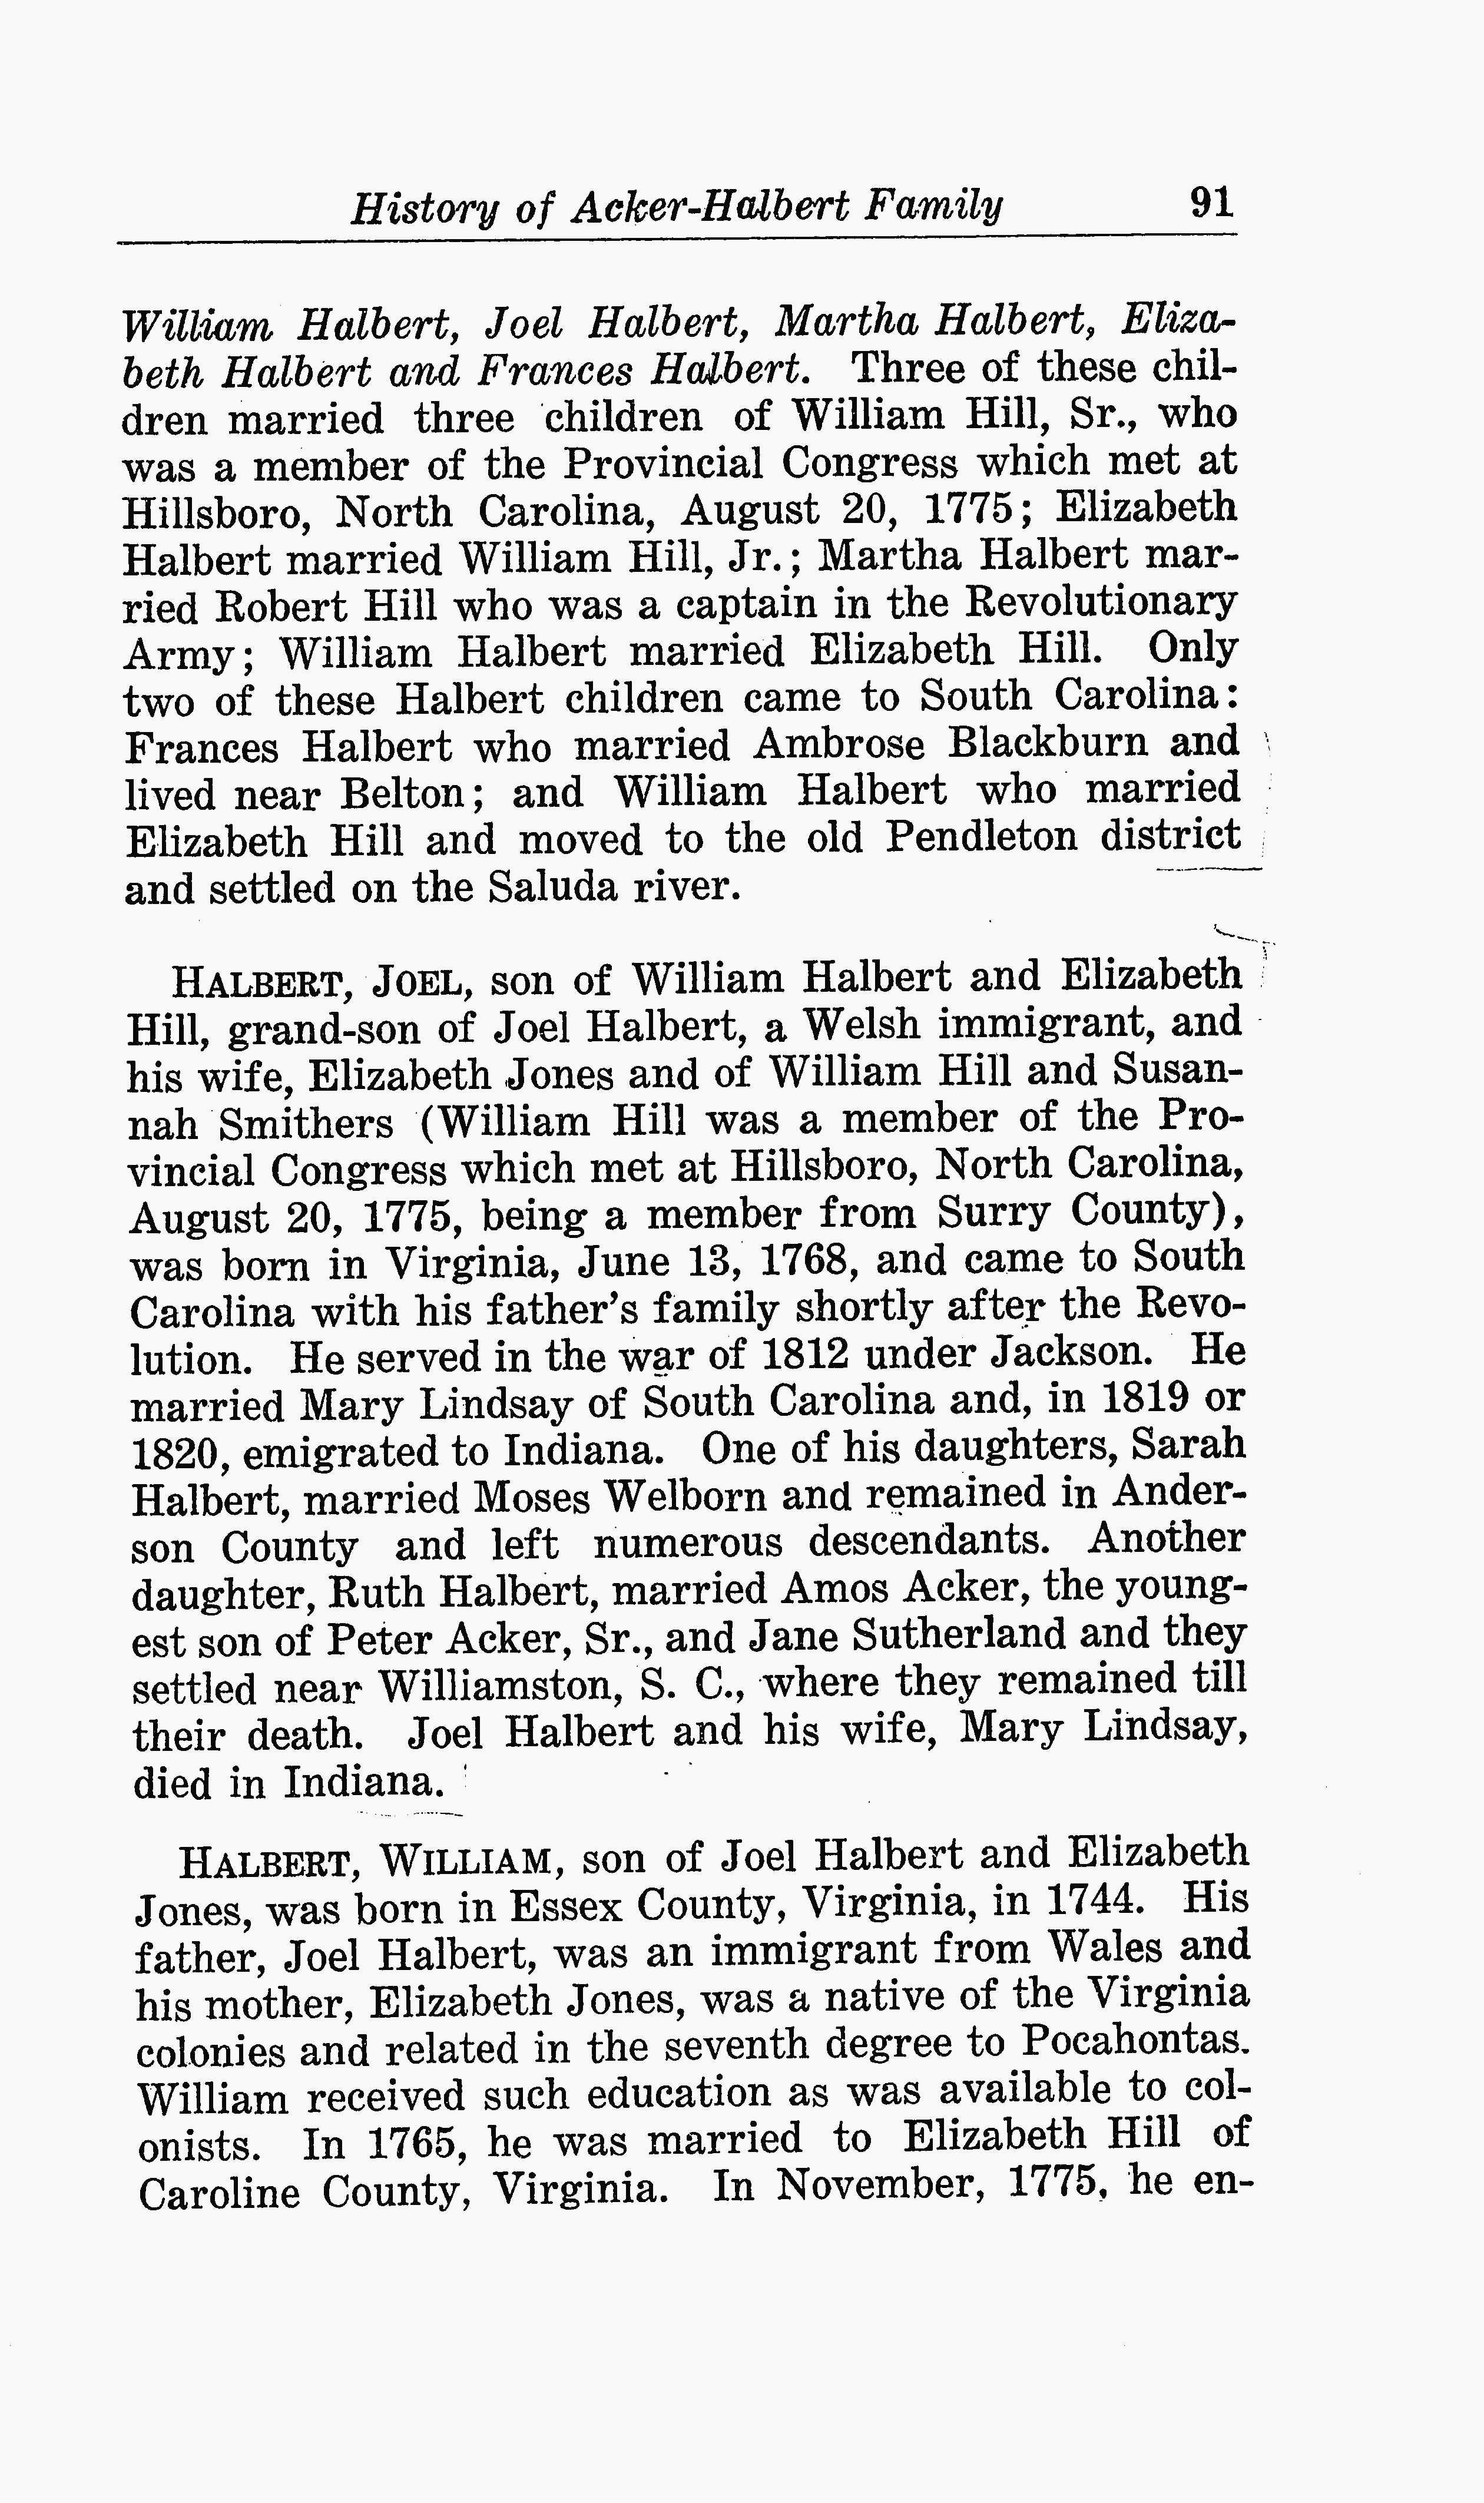 History of the Acker-Halbert family